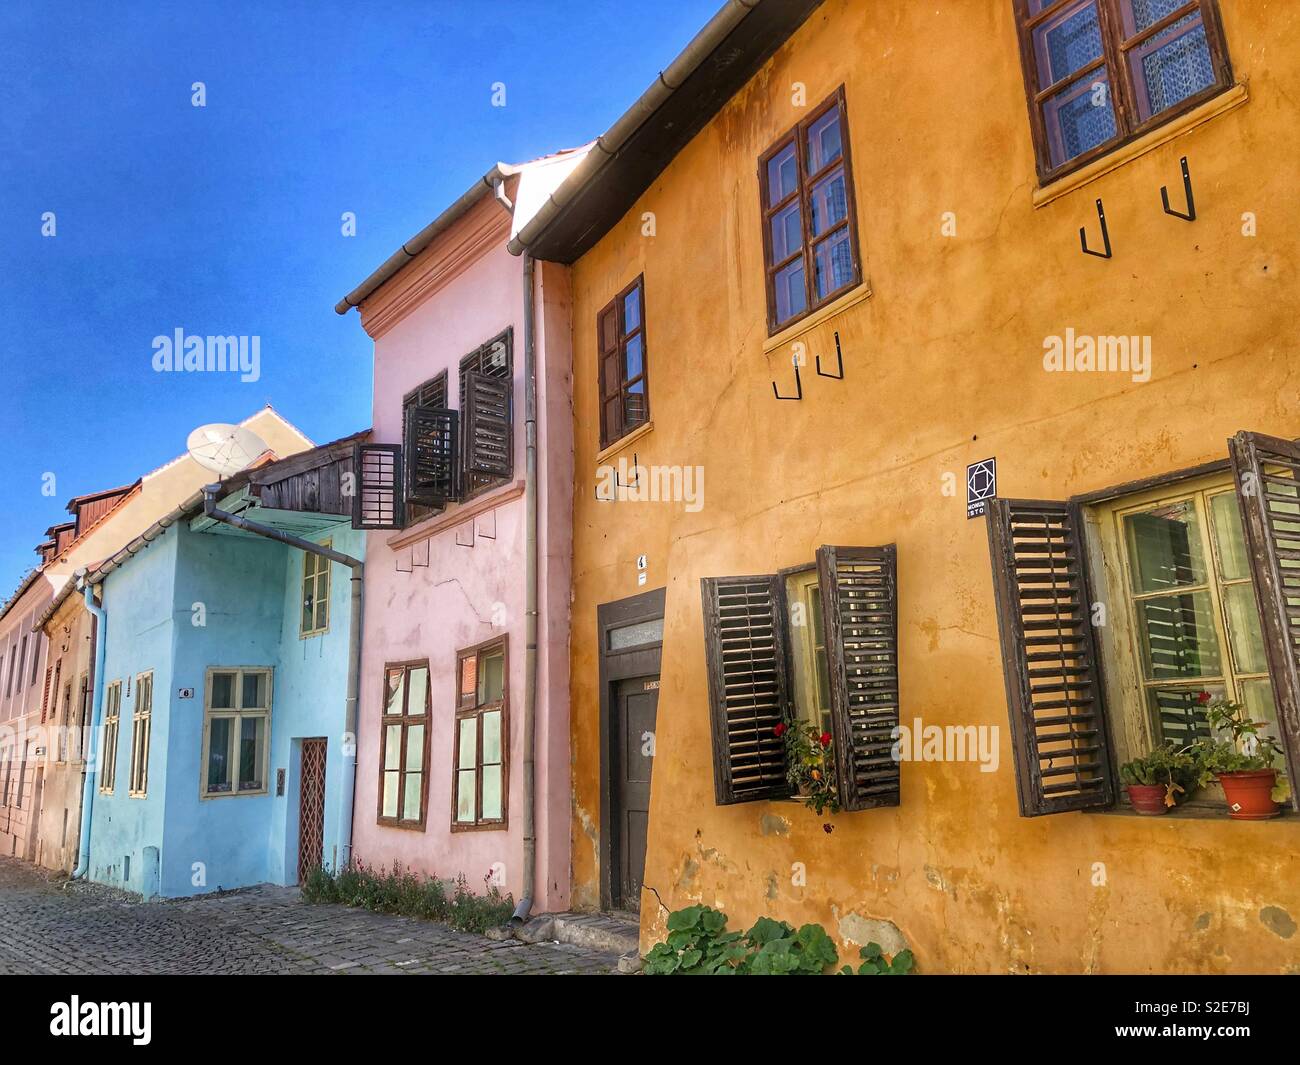 Bunt bemalten Fassaden in Sighisoara, eine mittelalterliche Stadt in Rumänien. Stockfoto